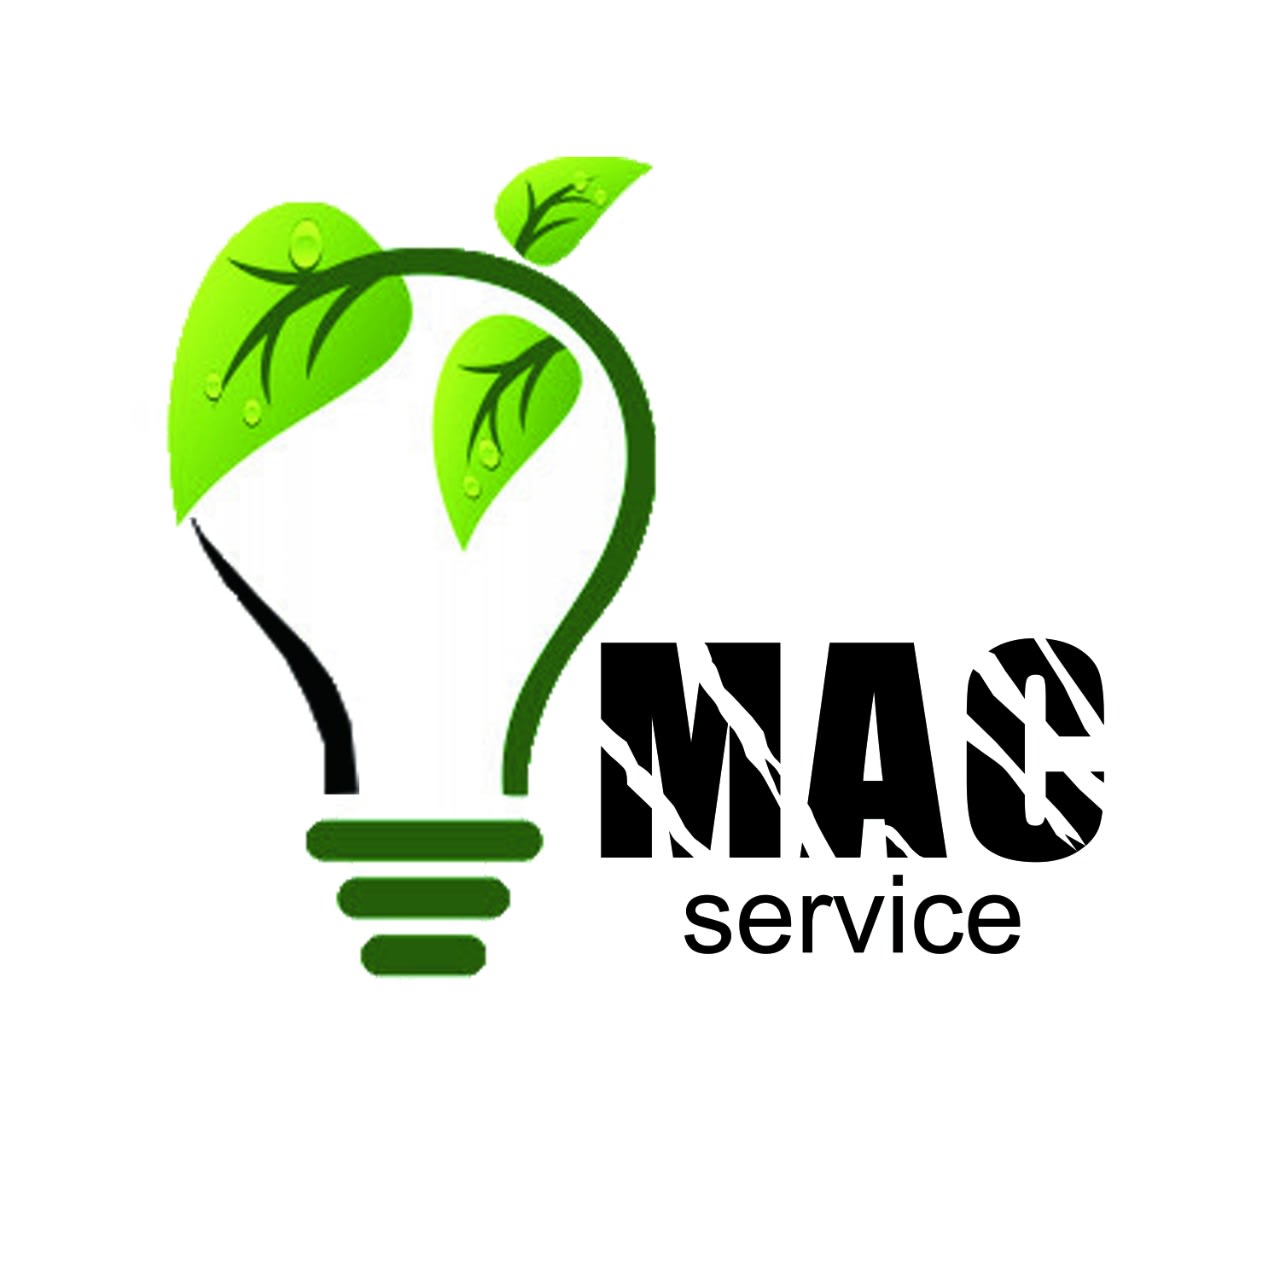 Mac Service